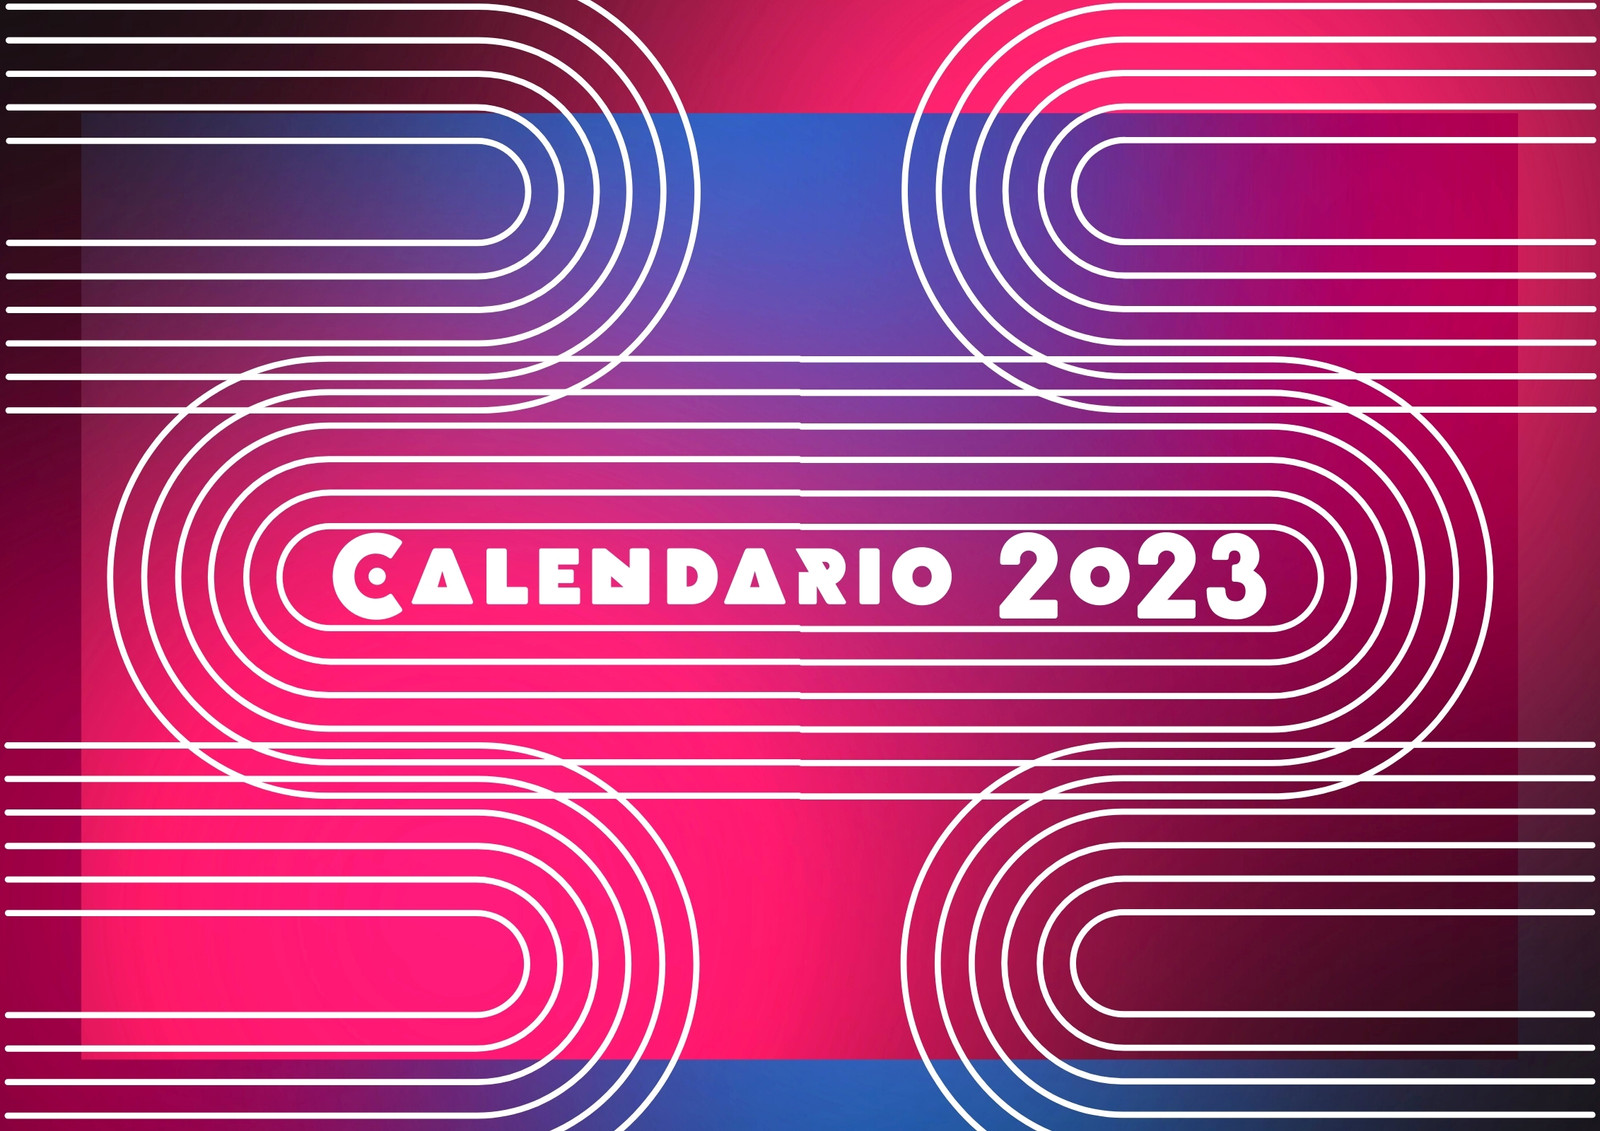 Calendario de pared 2023 geometrico rosa